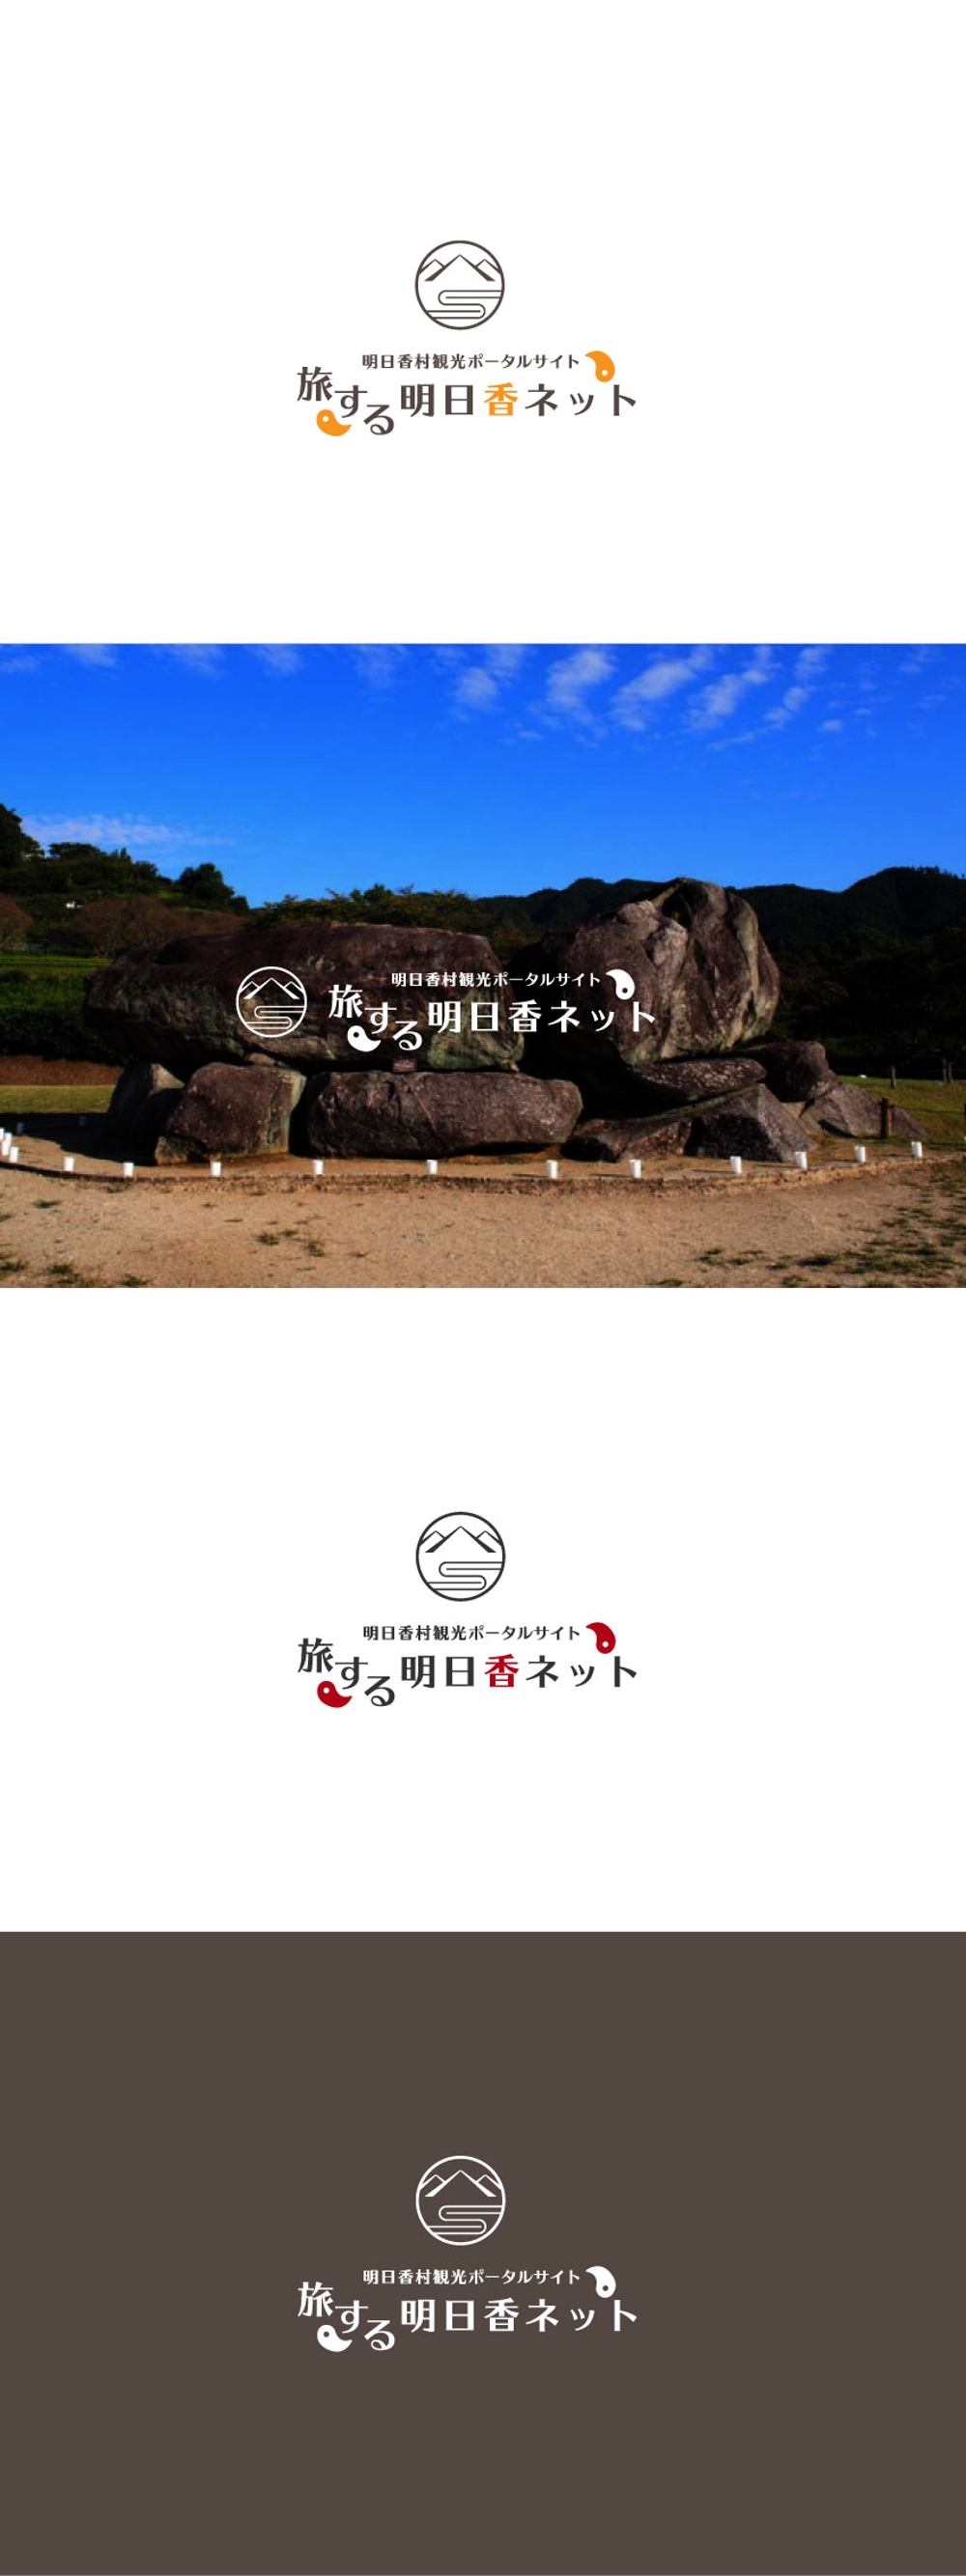 奈良県明日香村「観光ポータルサイト」のロゴ